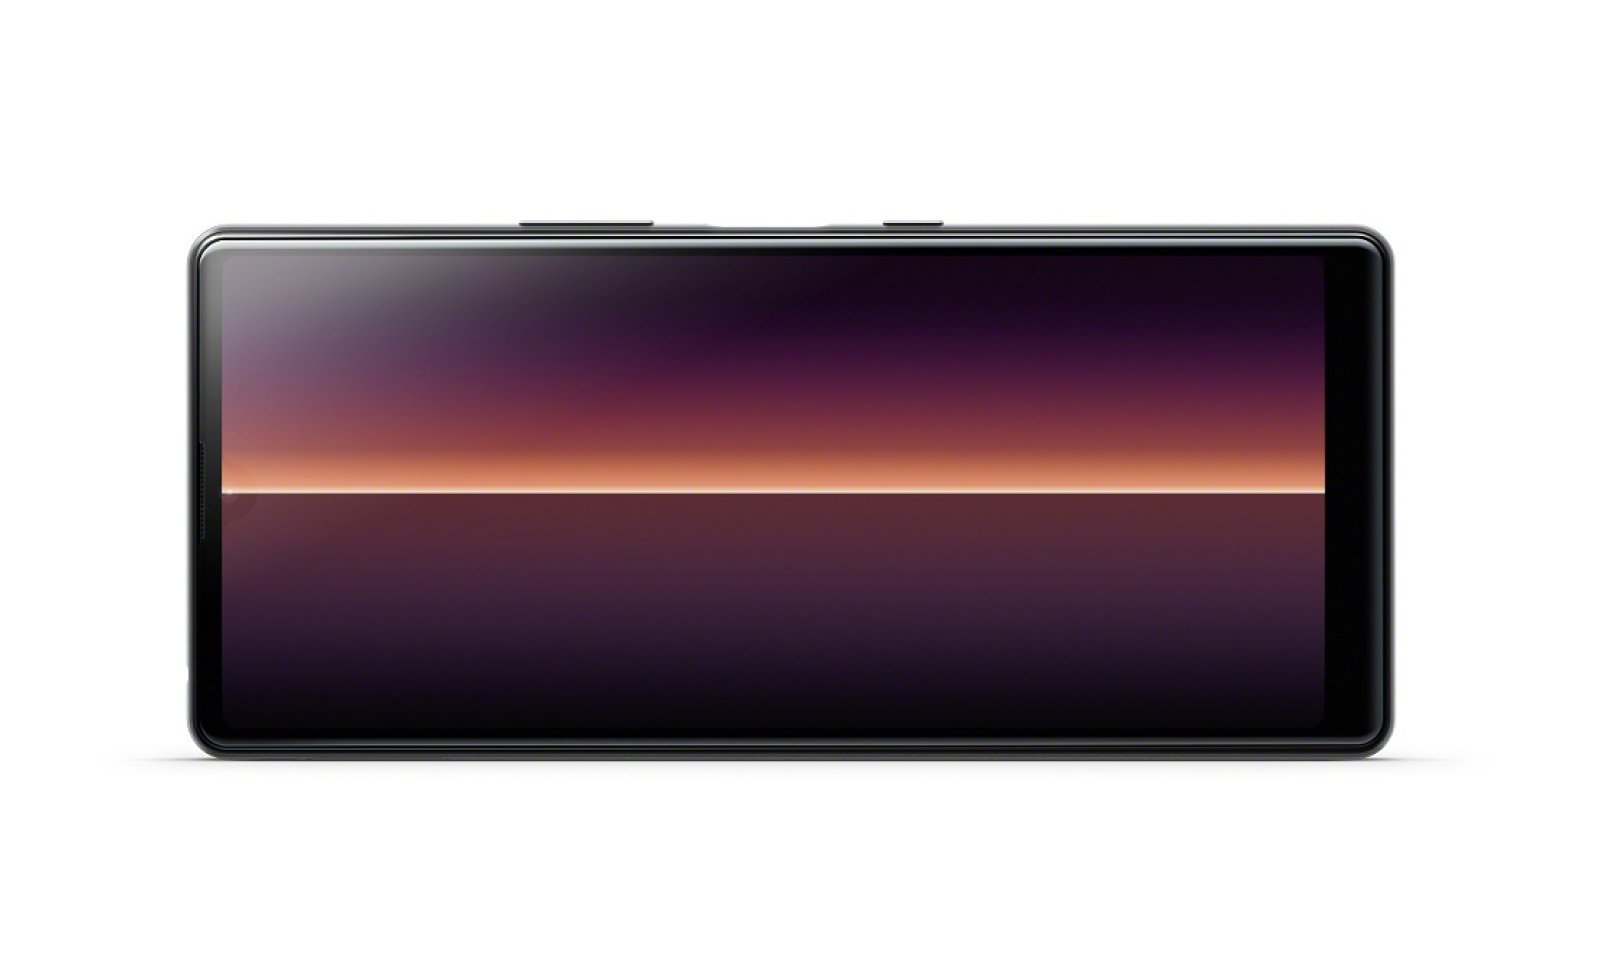 سوني تكشف عن هاتف Xperia L4 الجديد من الفئة المنخفضة 